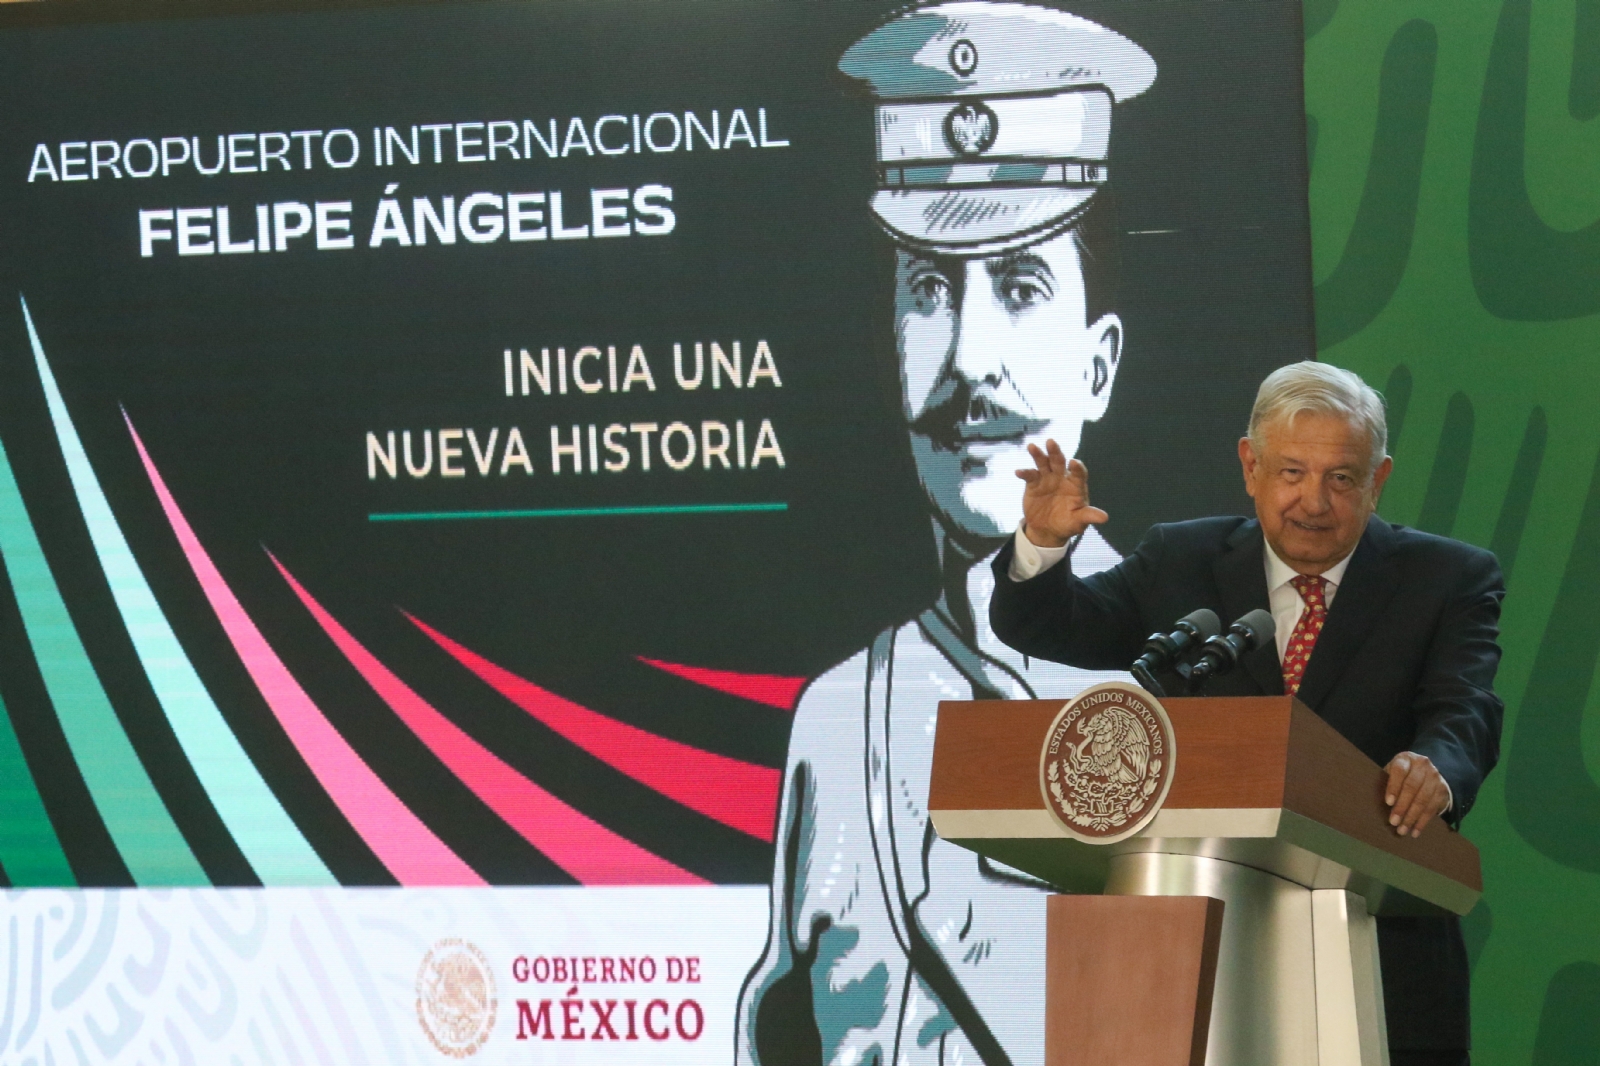 El presidente Andrés Manuel López Obrador inaugurará el Aeropuerto Internacional Felipe Ángeles